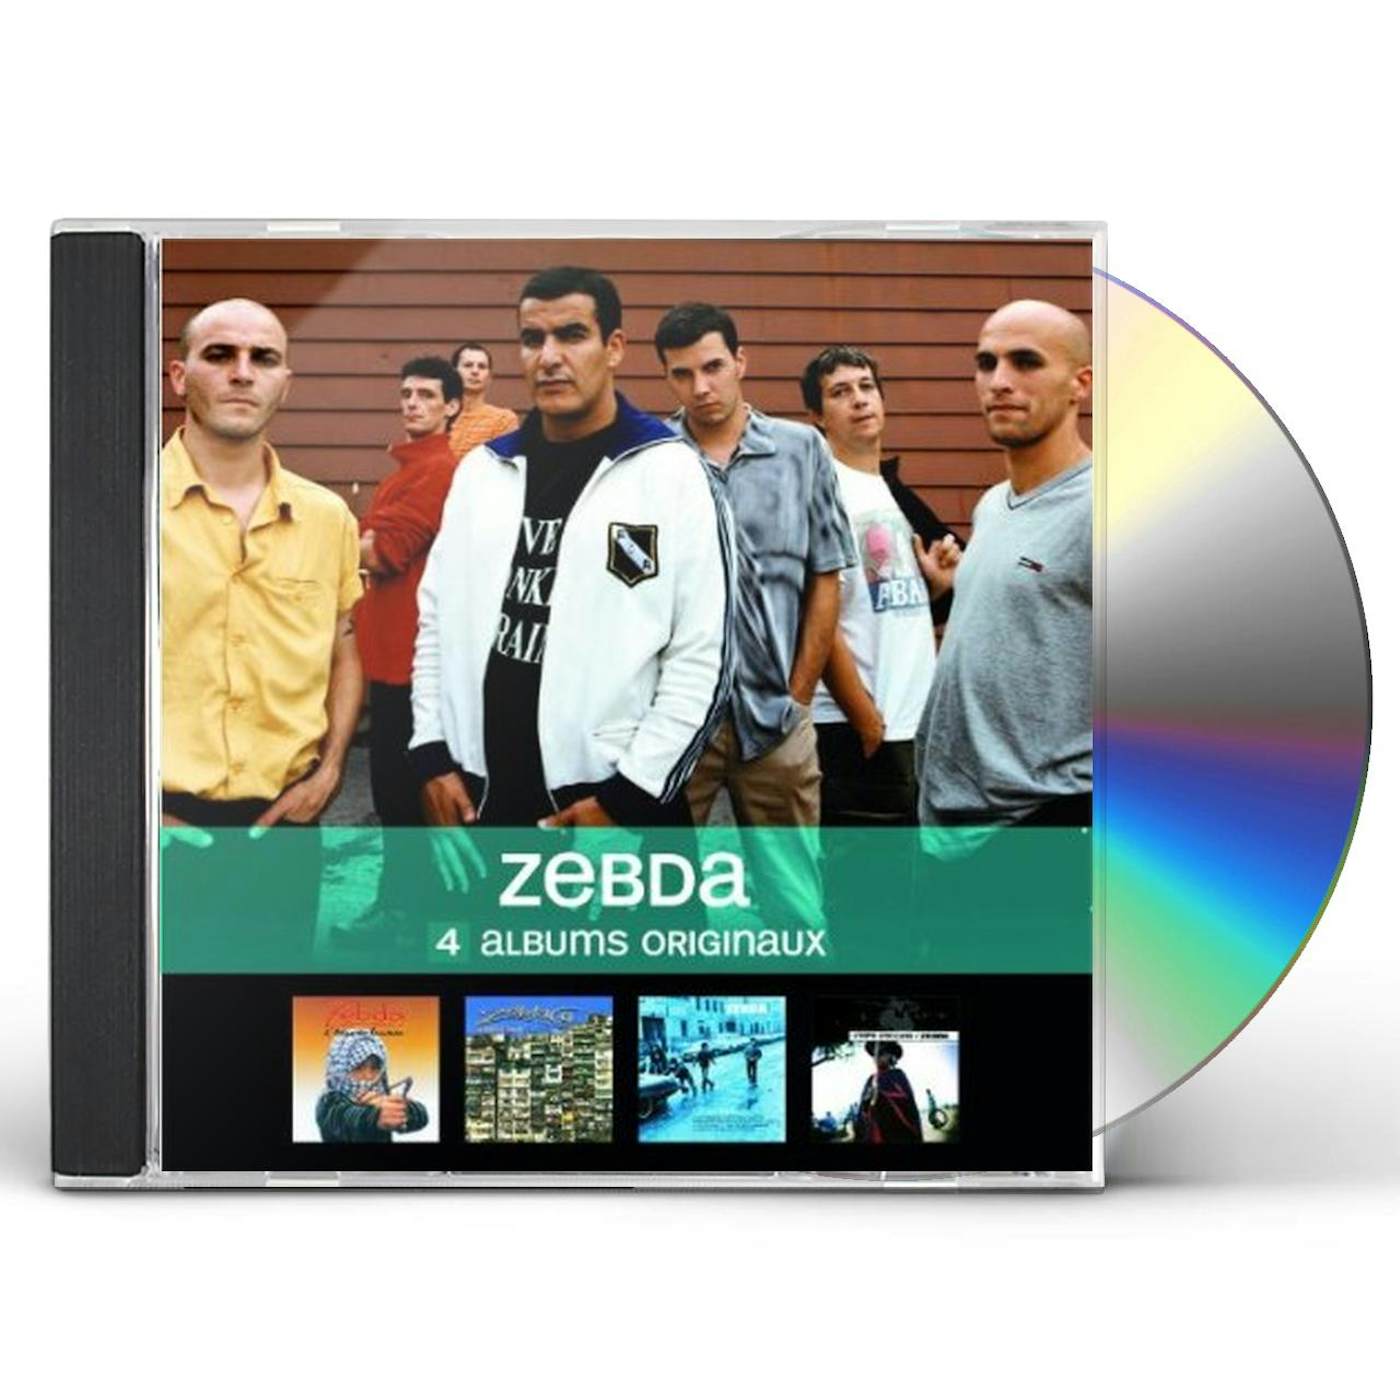 Zebda 4 ALBUMS ORIGINAUX CD